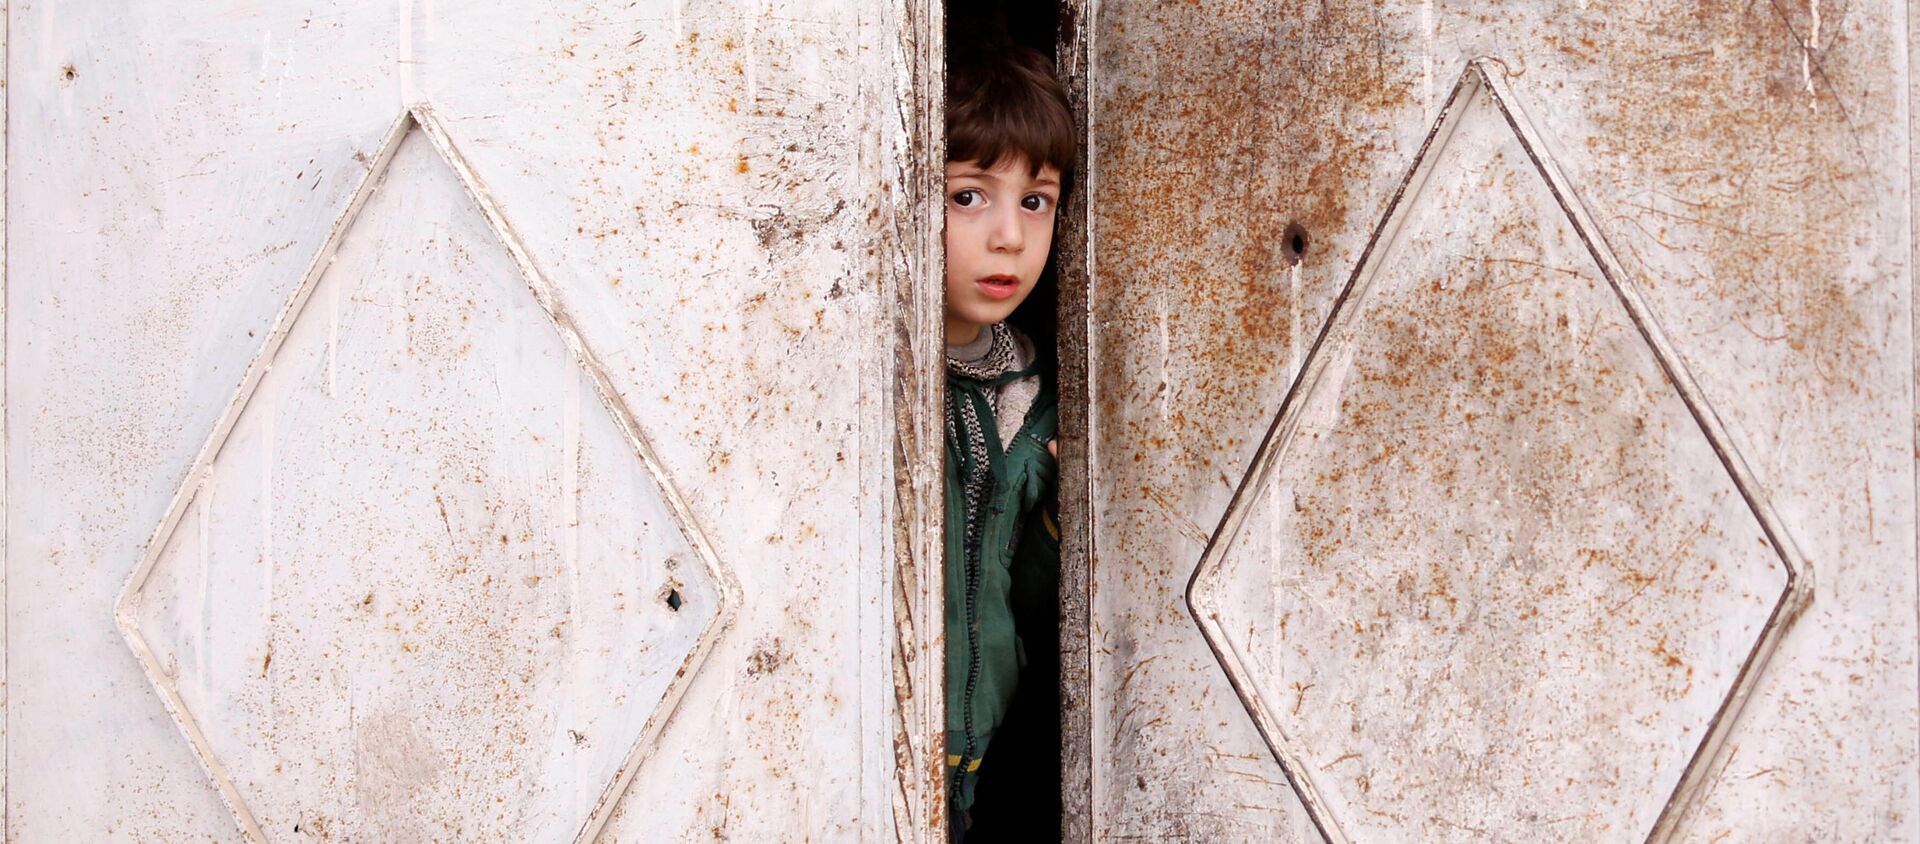 Ребенок выглядывает из дверей дома в Думе, пригороде Дамаска, Сирия - Sputnik Абхазия, 1920, 14.03.2021